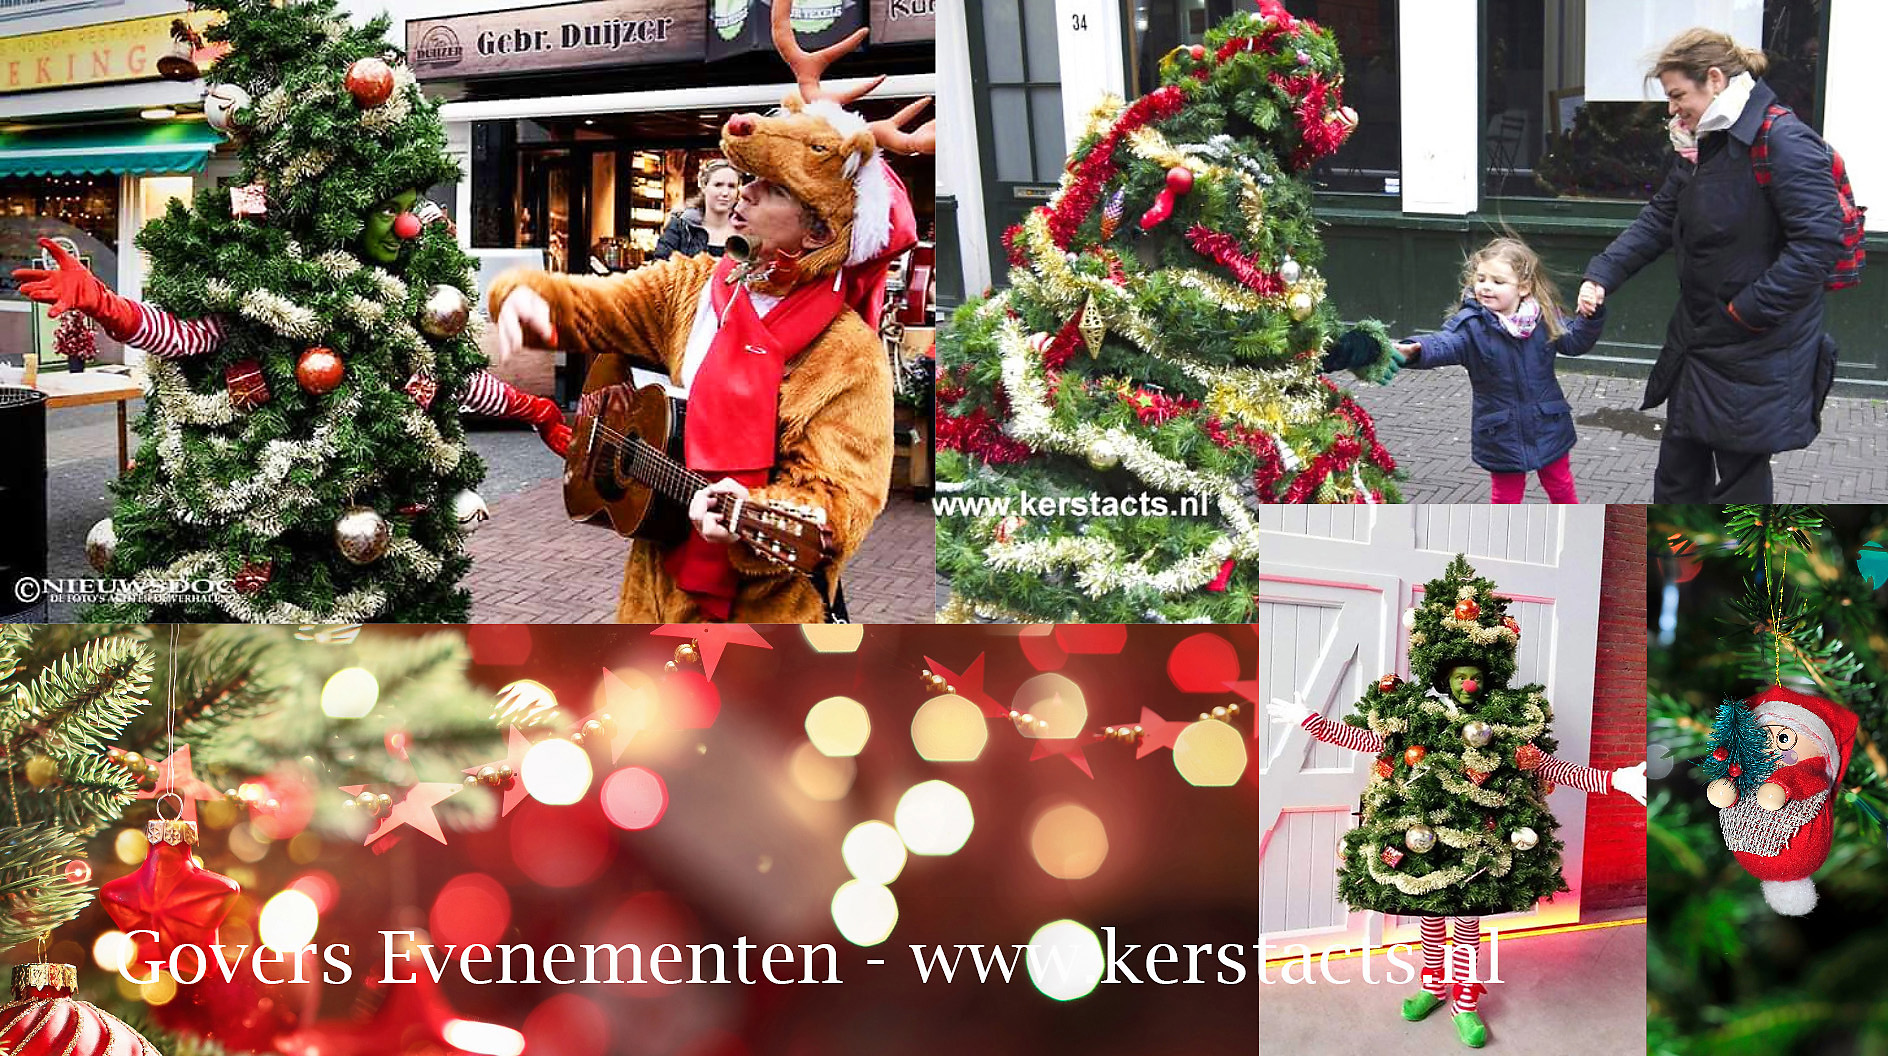 De wandelende kerstboom is kerstentertainment waar men heel vrolijk van wordt.. Jong en oud, kerstacts, thema kerst, artiesten boeken, www.kerstacts.nl